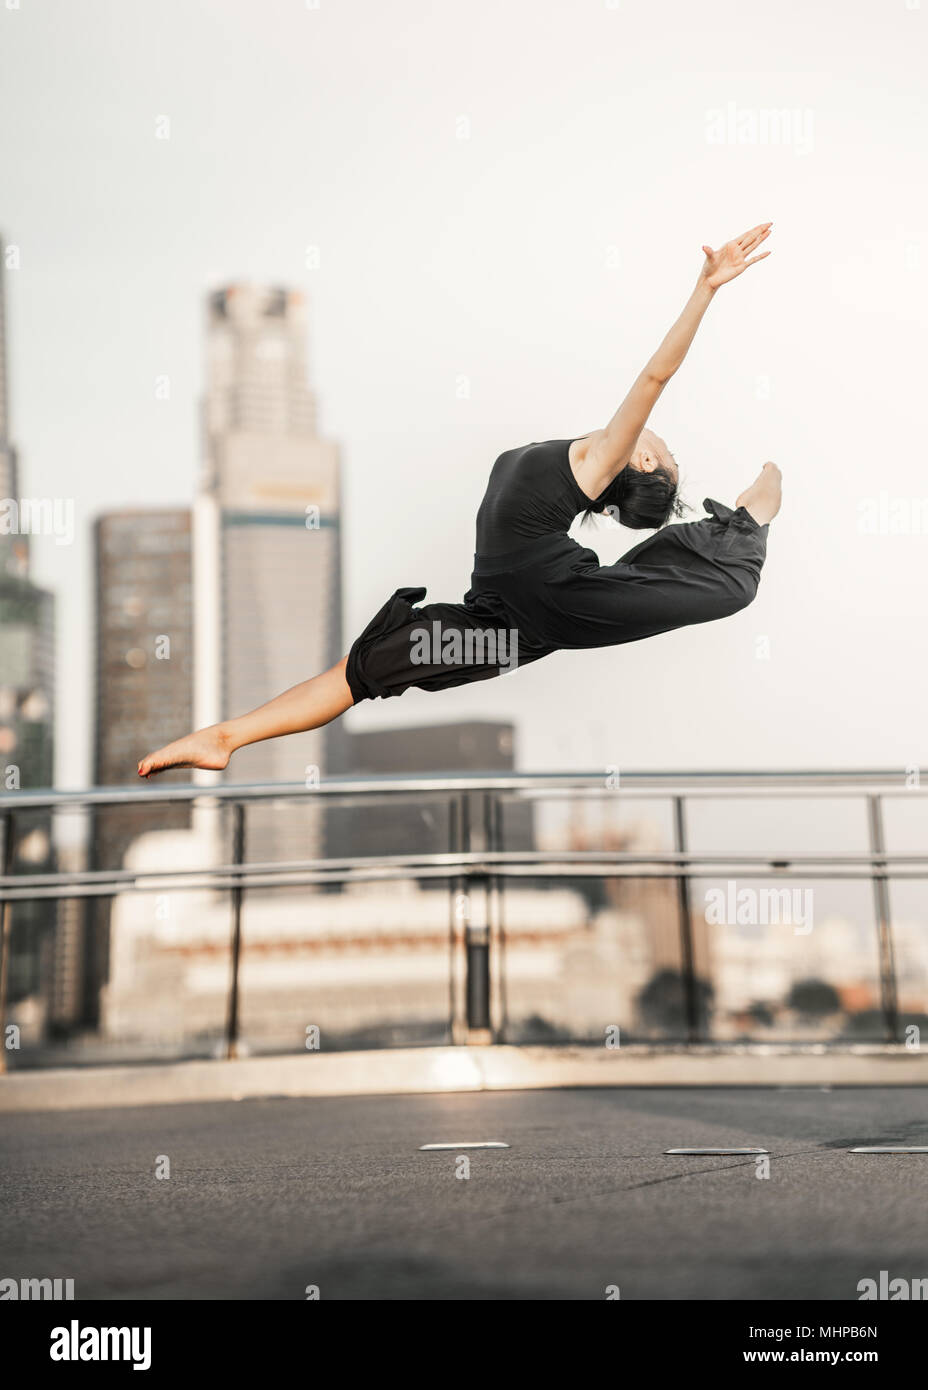 Passione... Donna giovane atleta svolge un perfetto salto in alto, su un ponte con lo sfondo dei grattacieli Foto Stock